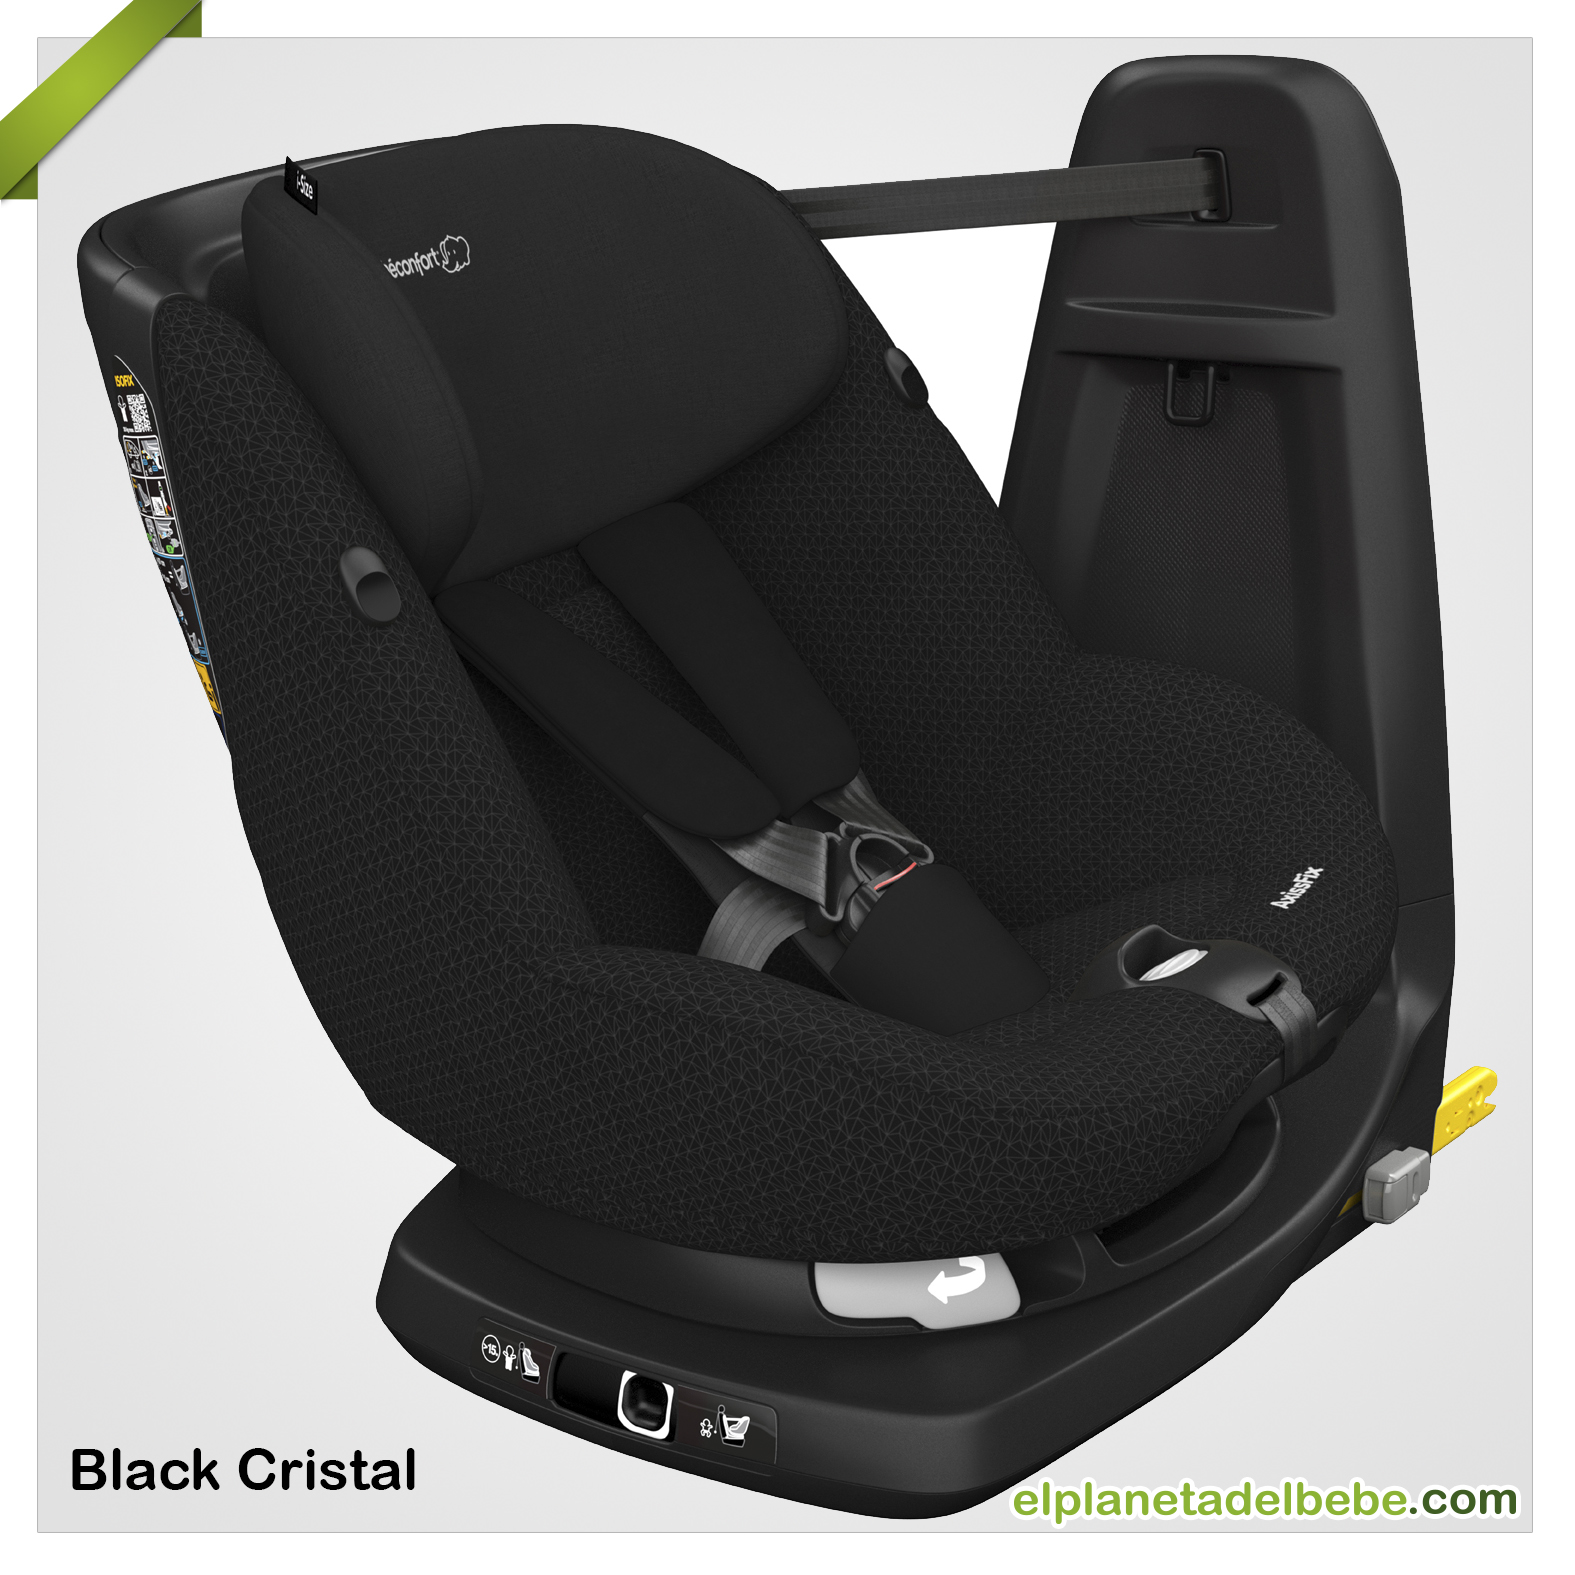 Nueva Axiss fix de Bébé Confort. Una silla de auto según la normativa  i-Size.